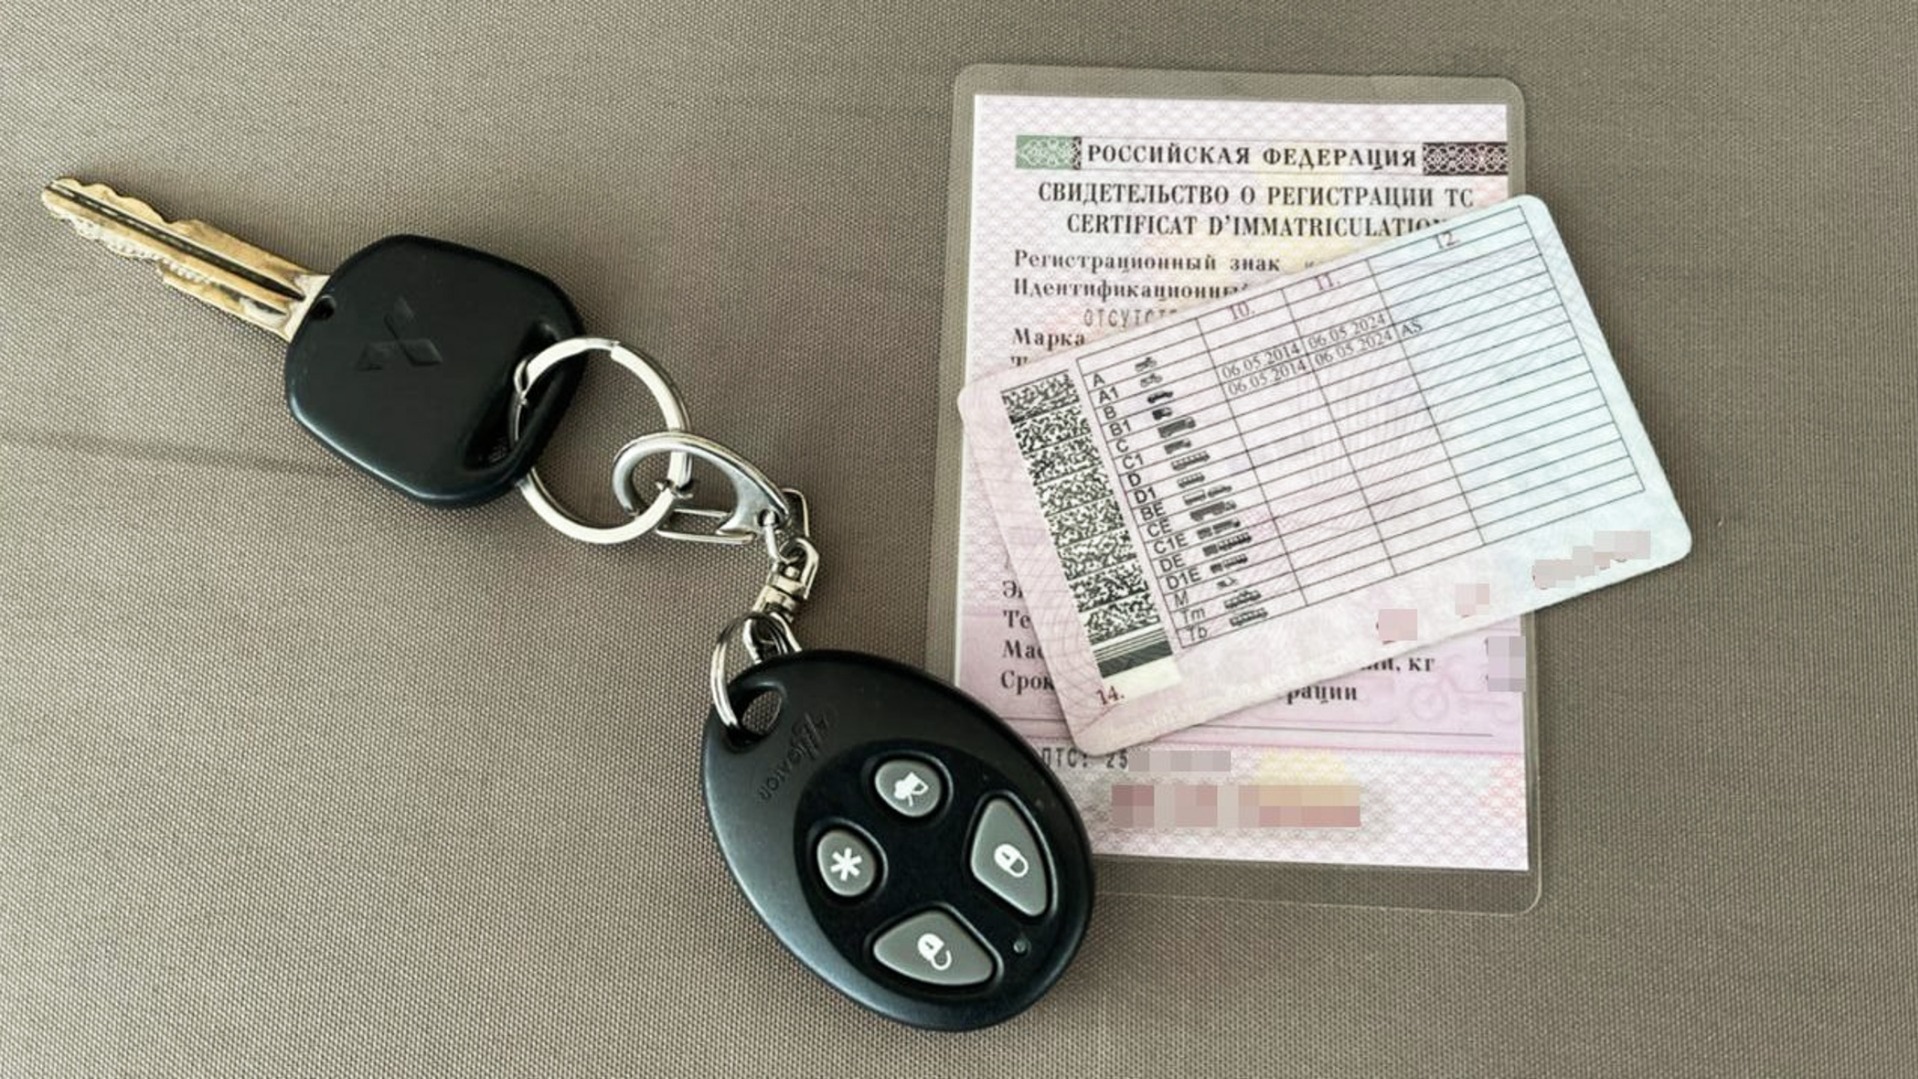 Тестирование электронных водительских прав стартует в России с 1 октября